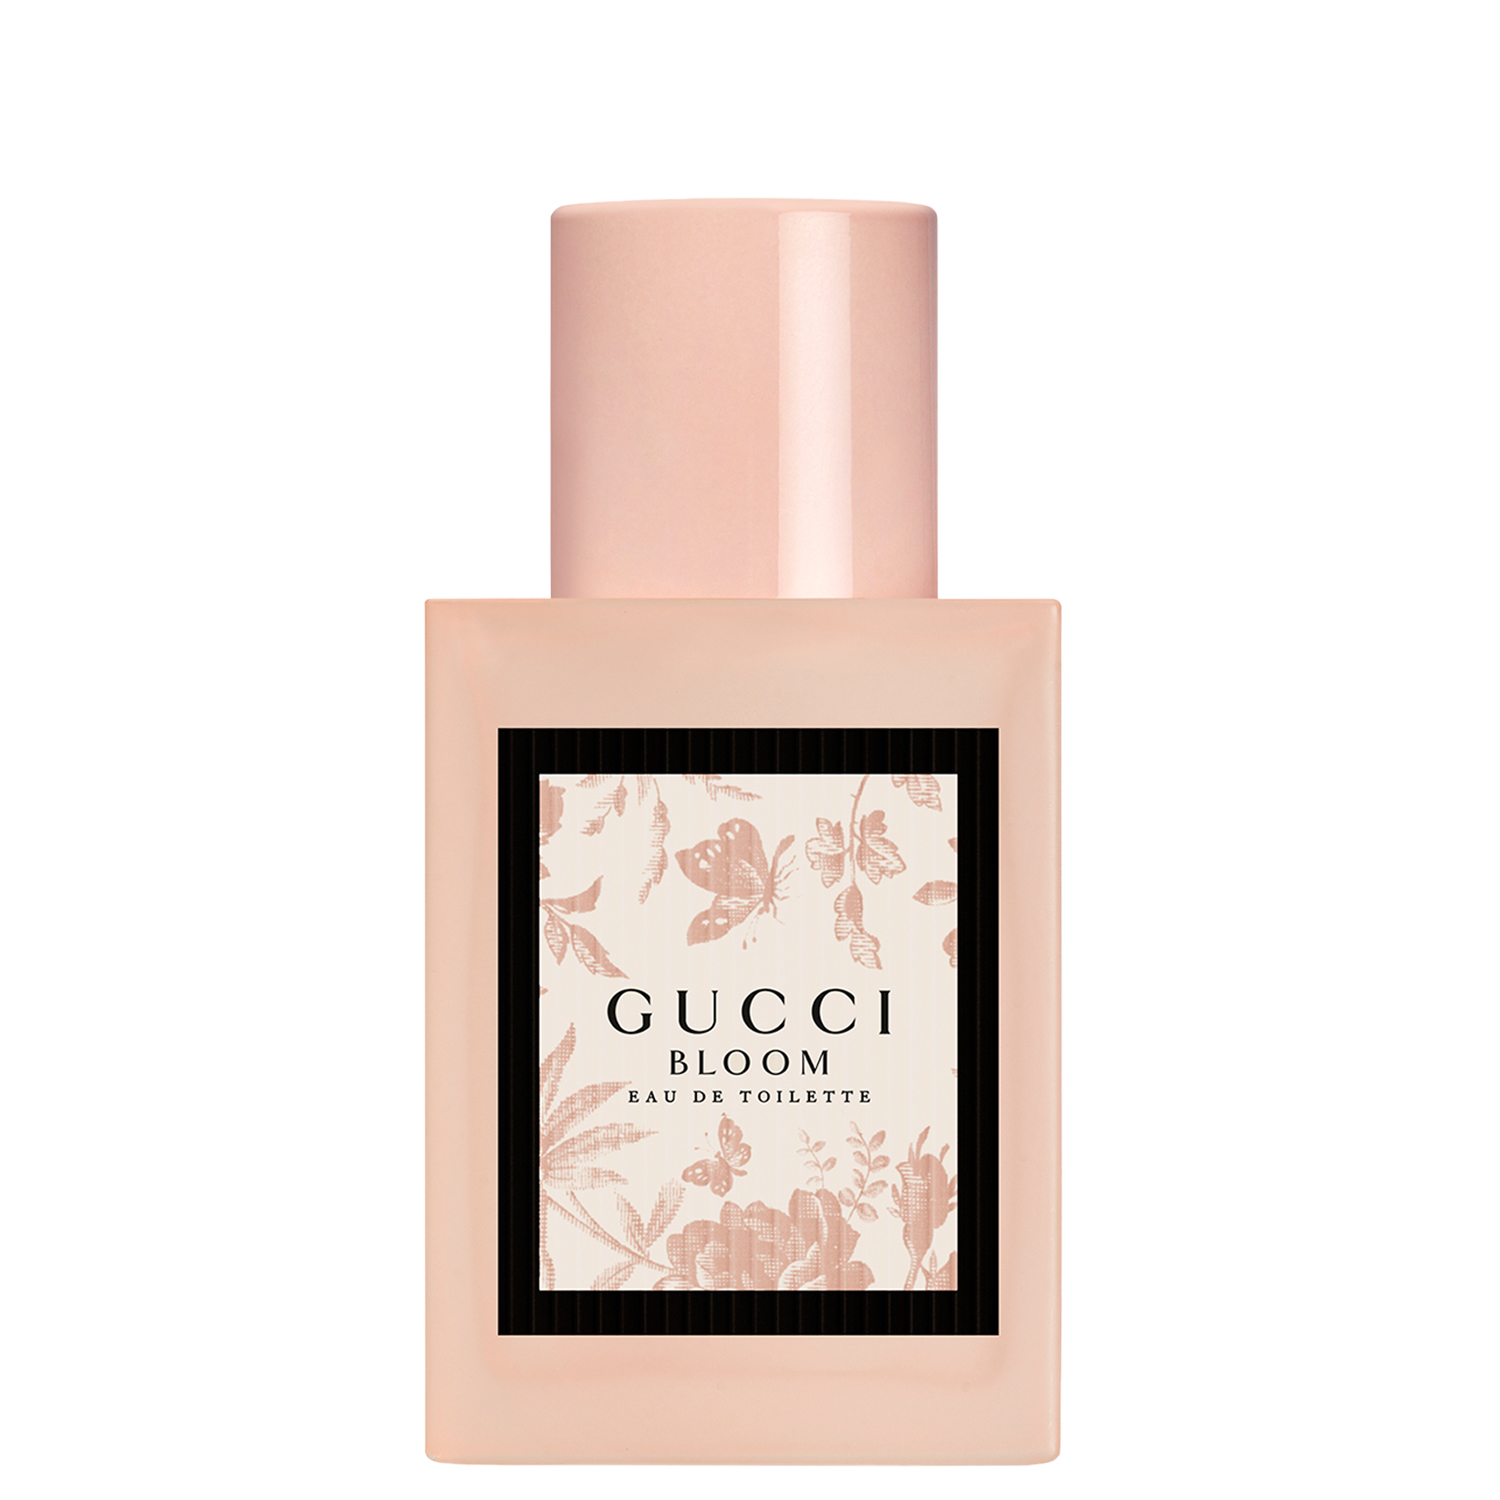 Gucci Bloom Eau de Toilette 30ml